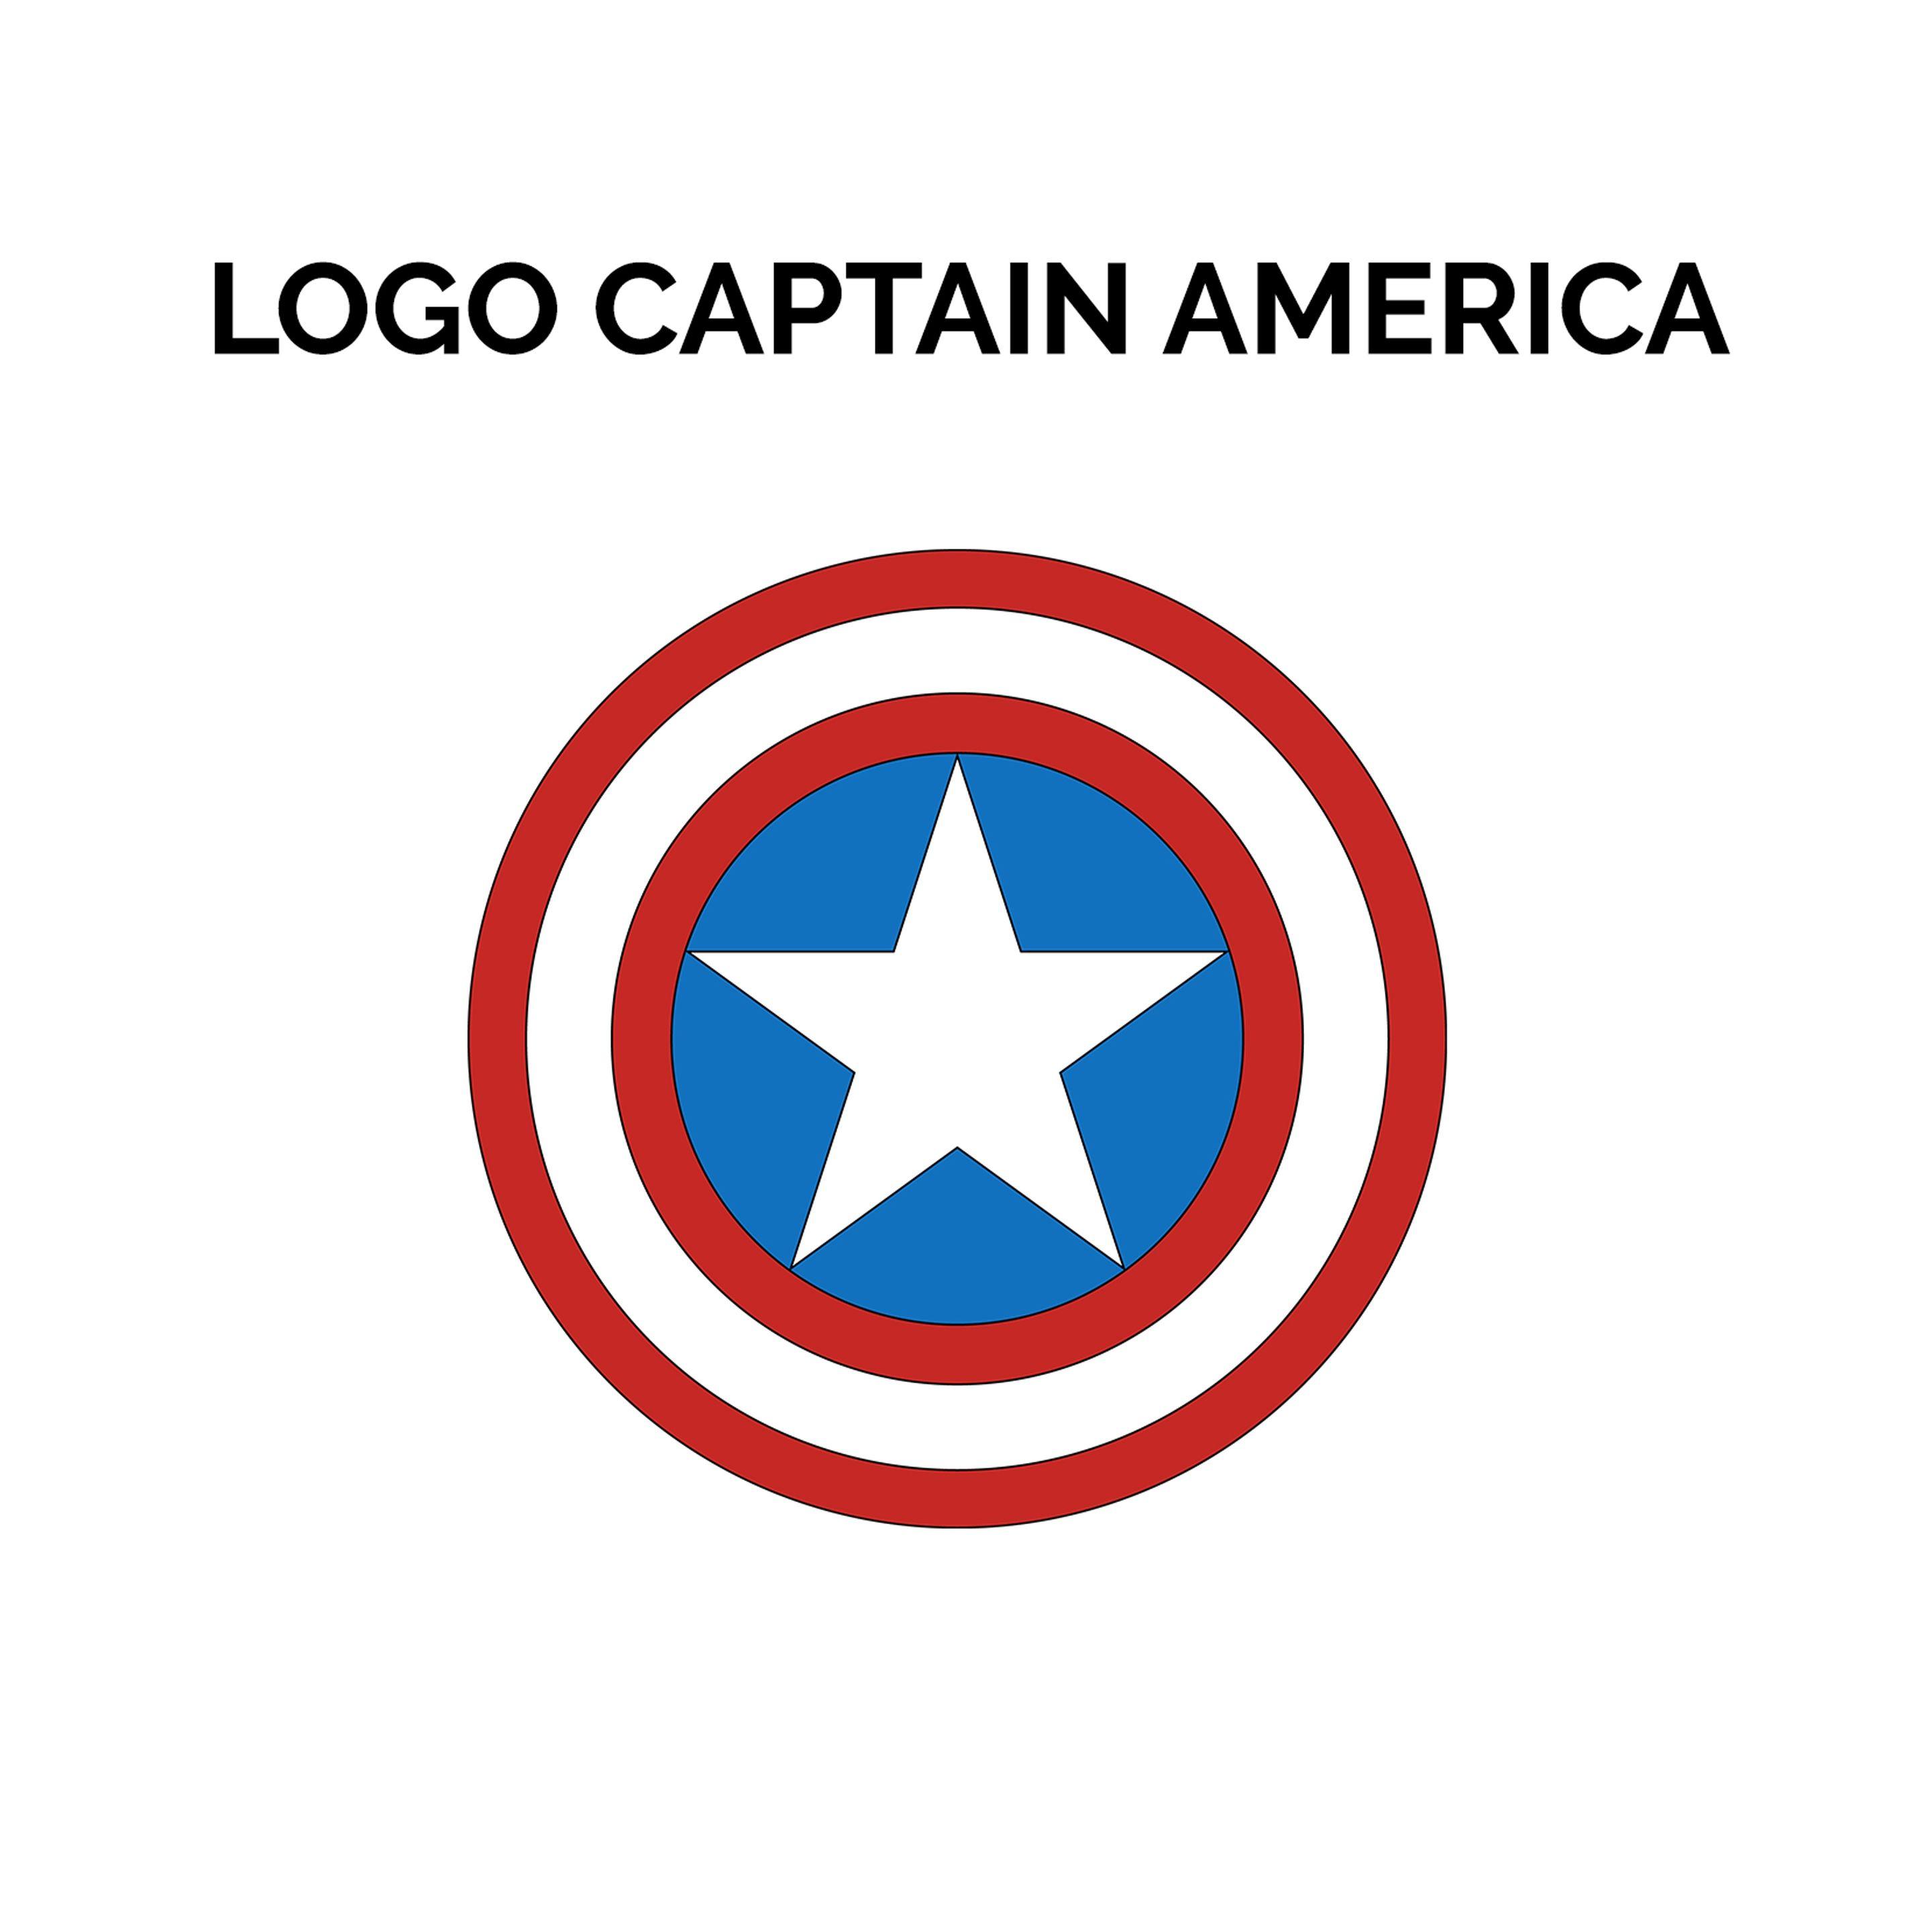 Captain America Logo - Logo PS4 Controller Captain America Shield